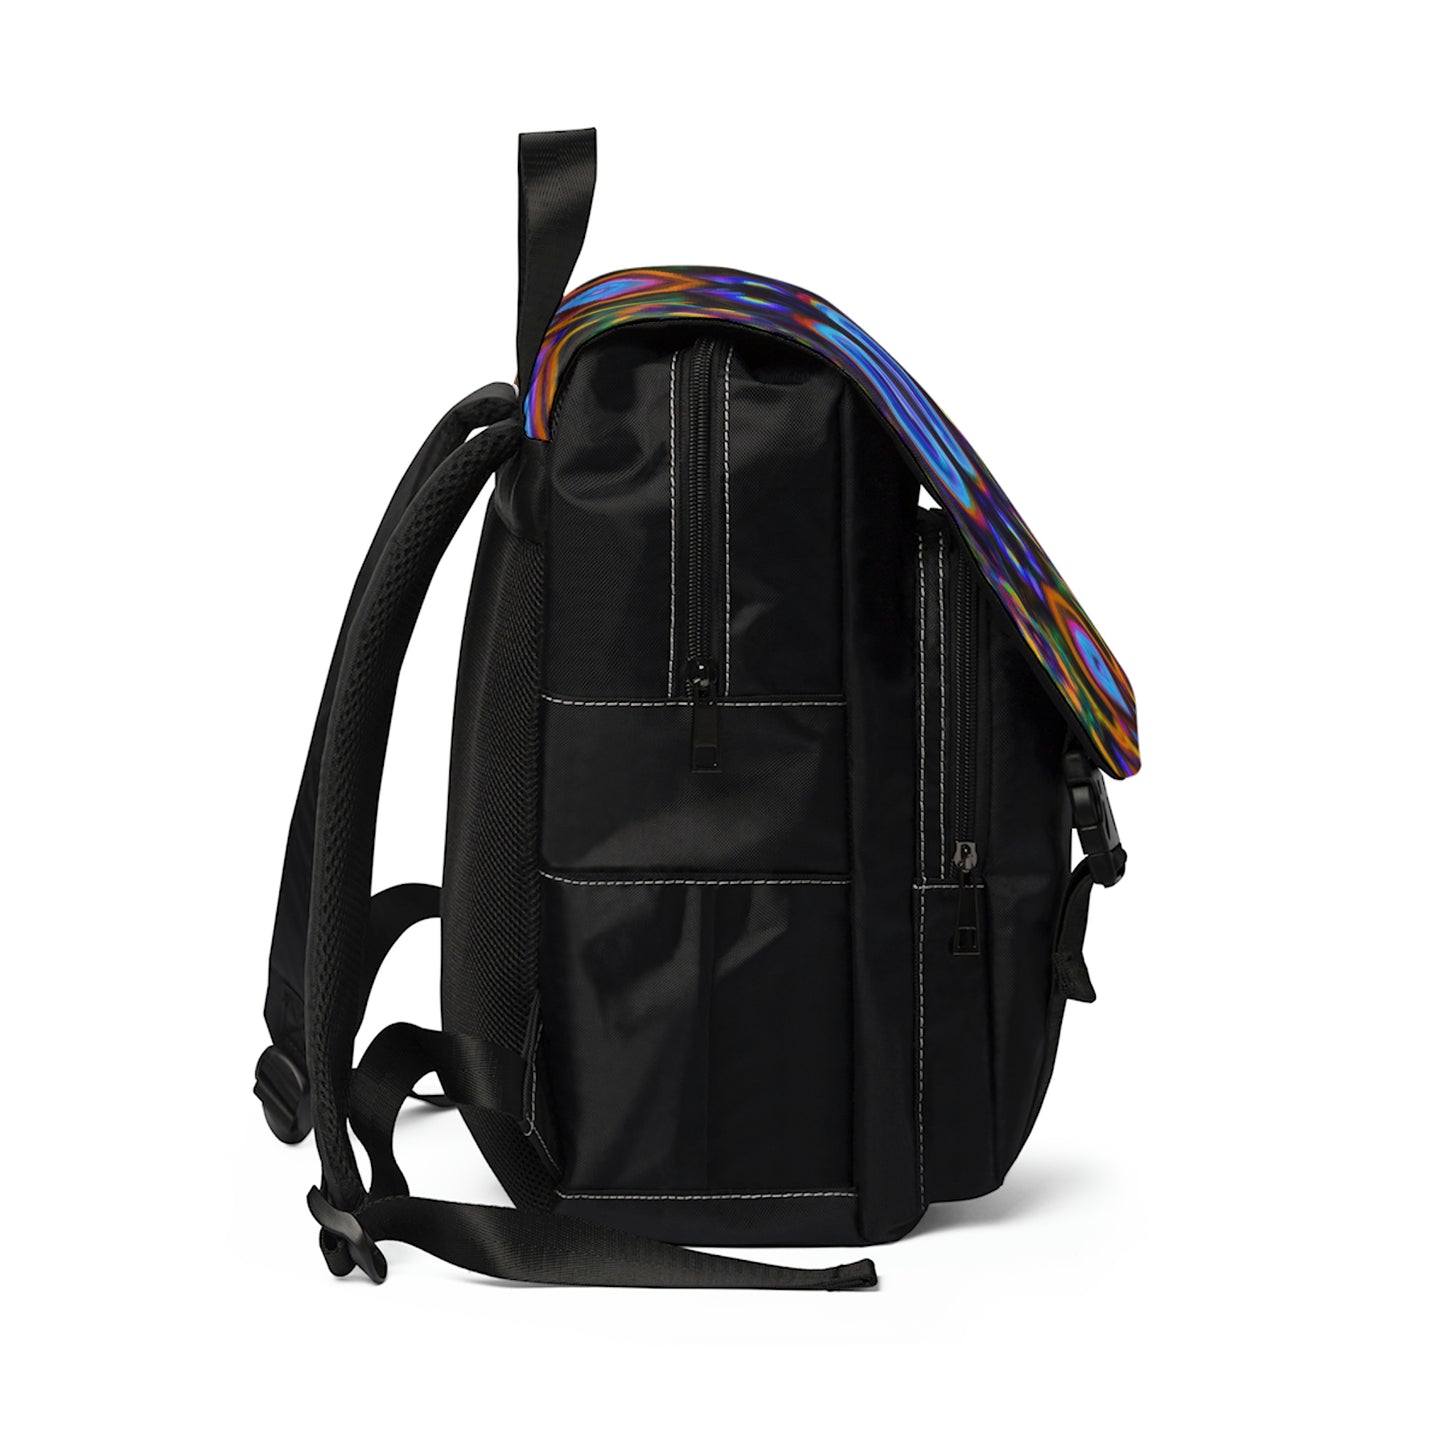 .

Deloryn - Psychedelic Shoulder Travel Backpack Bag